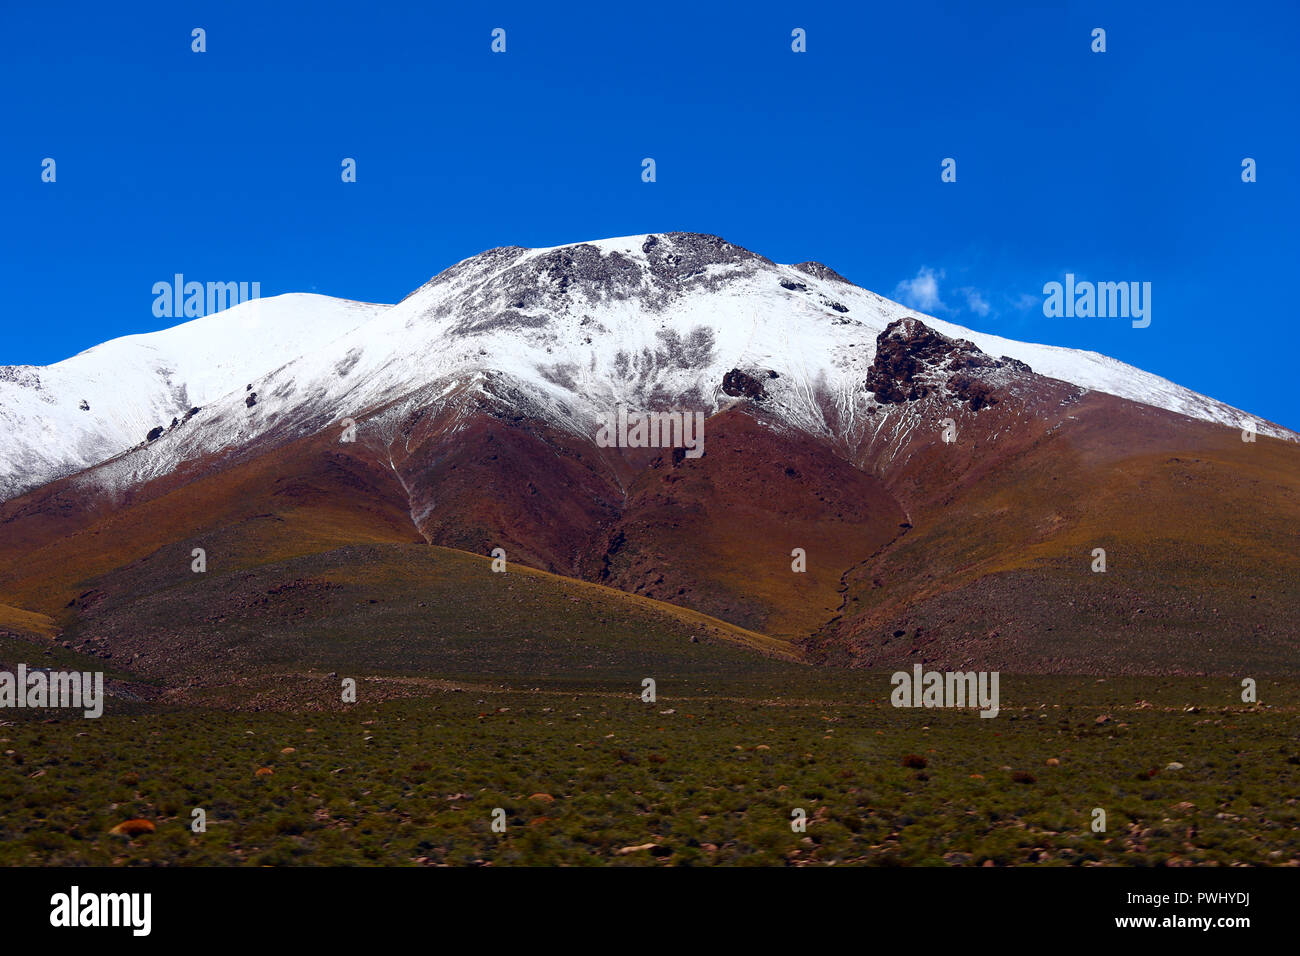 Blanc de la neige et de la végétation verte près de San Pedro de Atacama (Chili). Banque D'Images